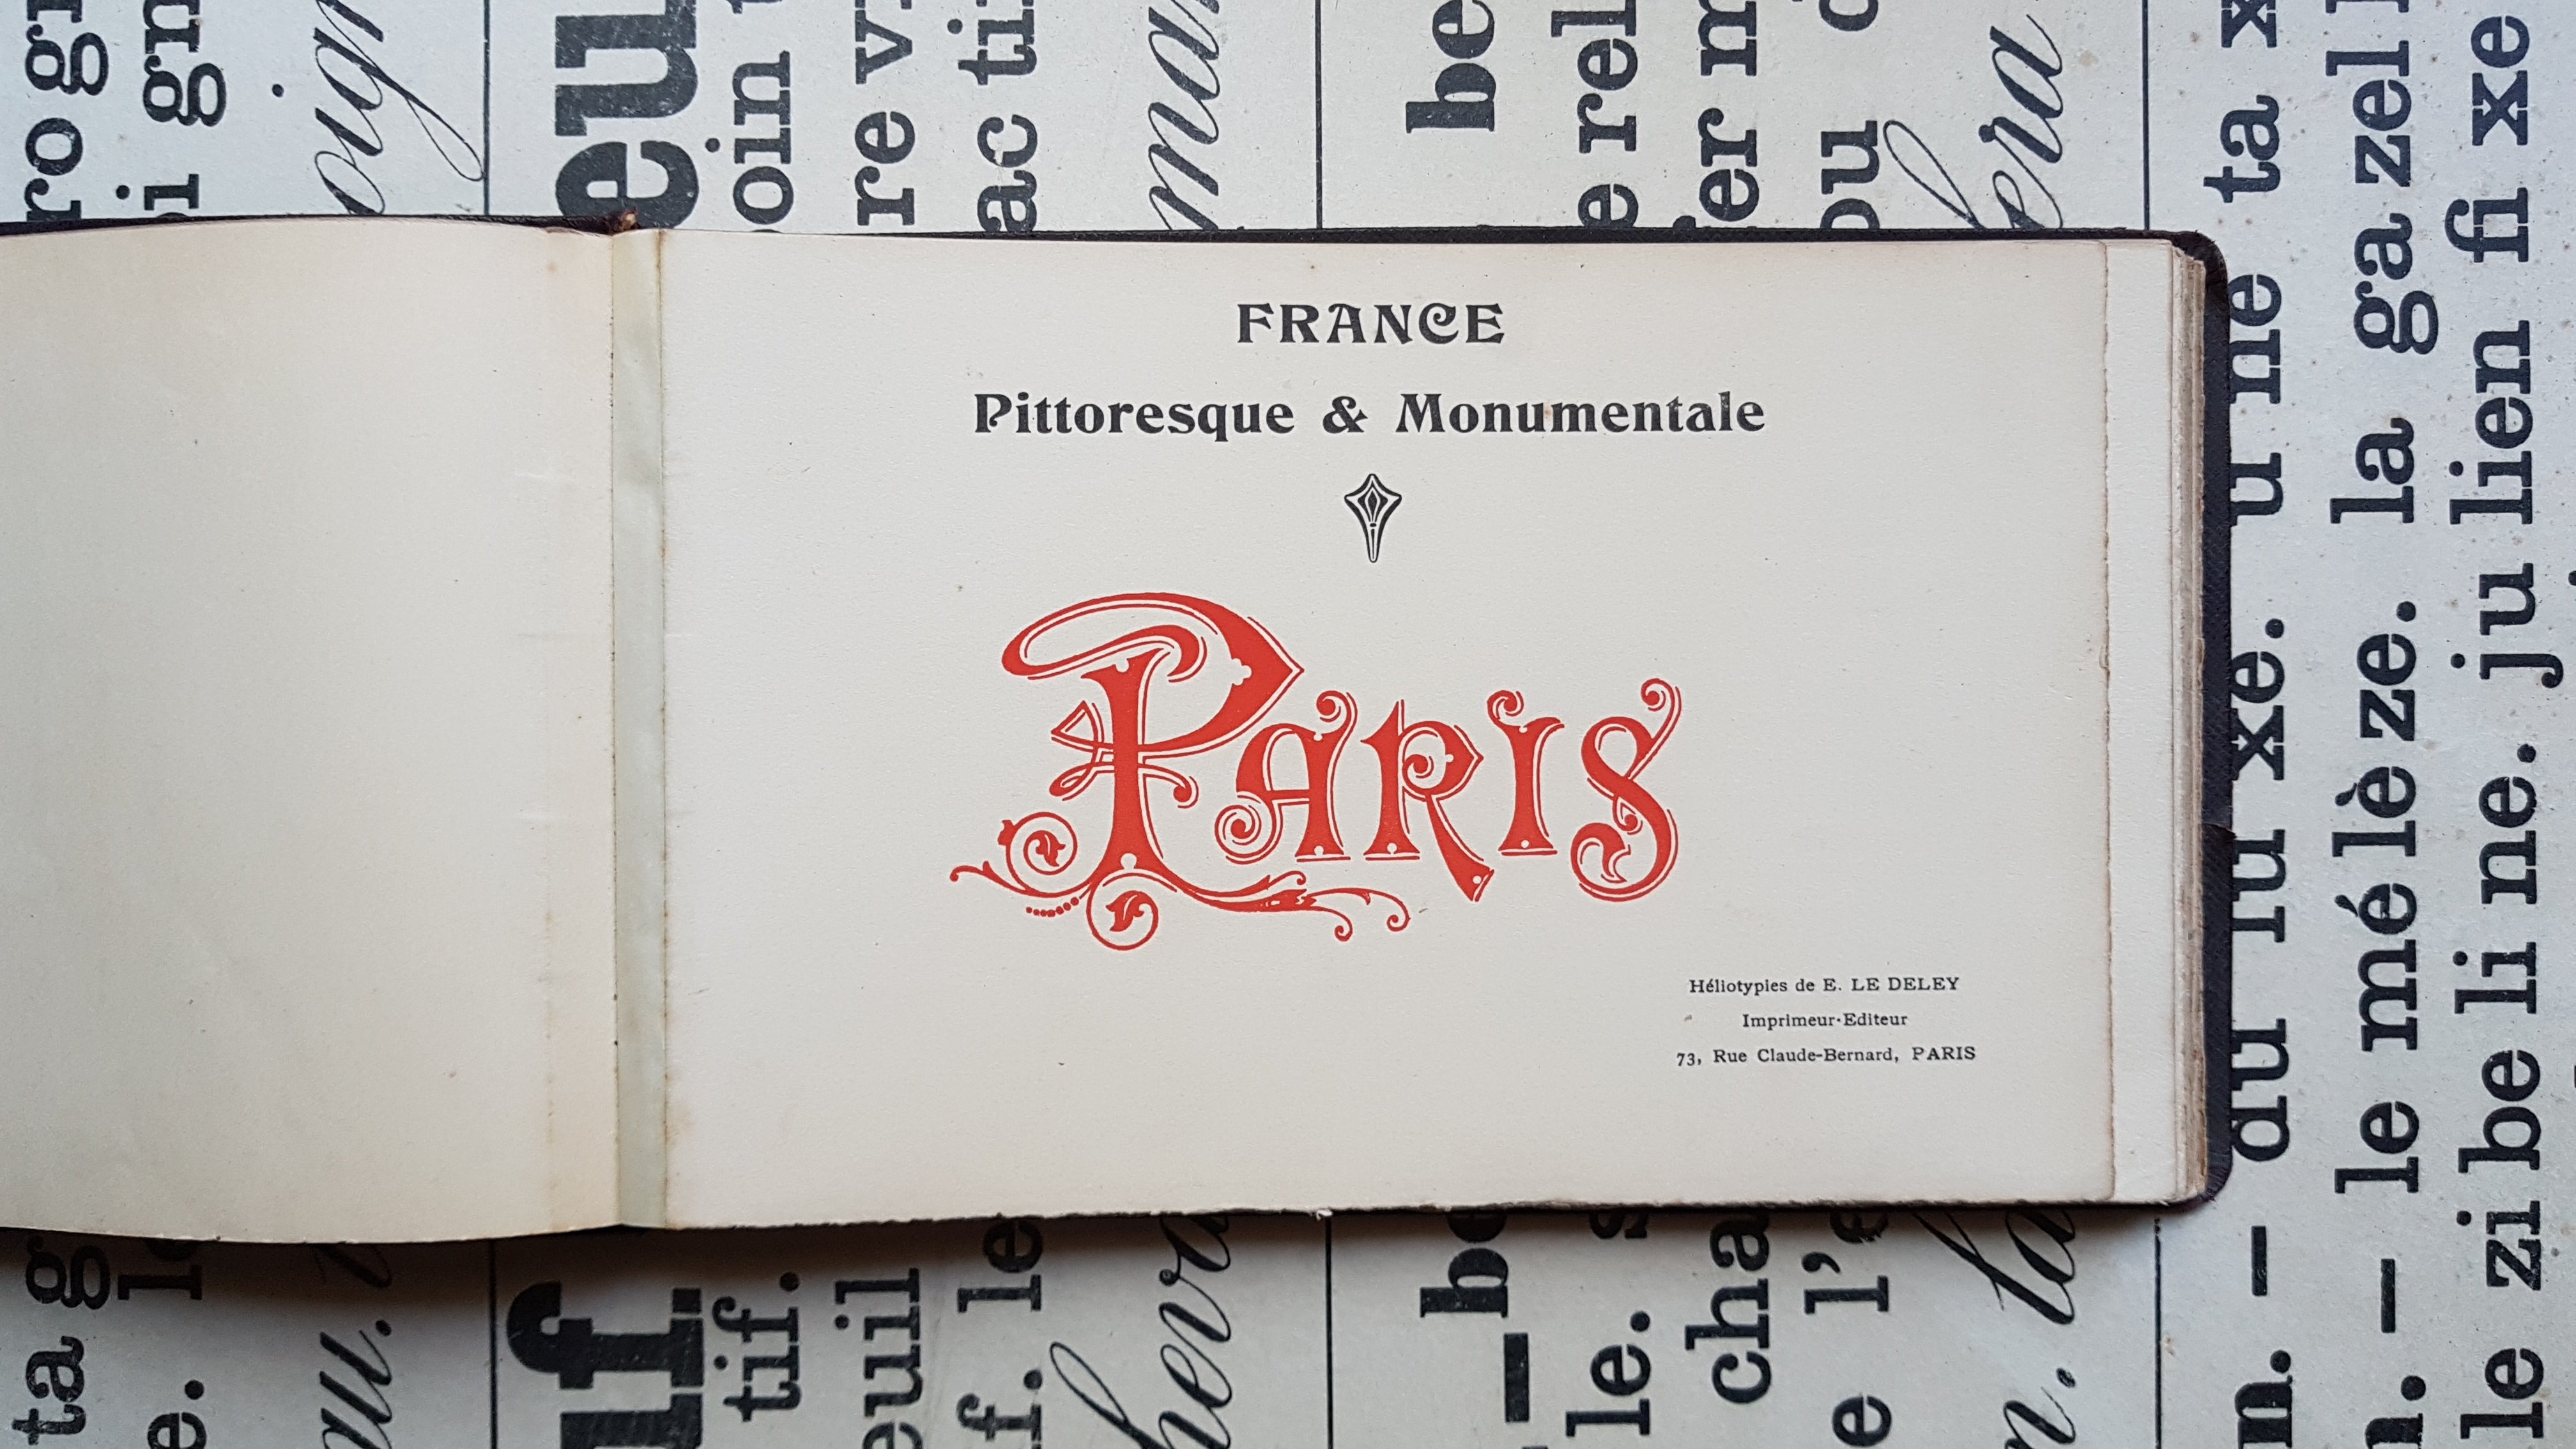 Antique Paris photography book. Collotypes E Deley